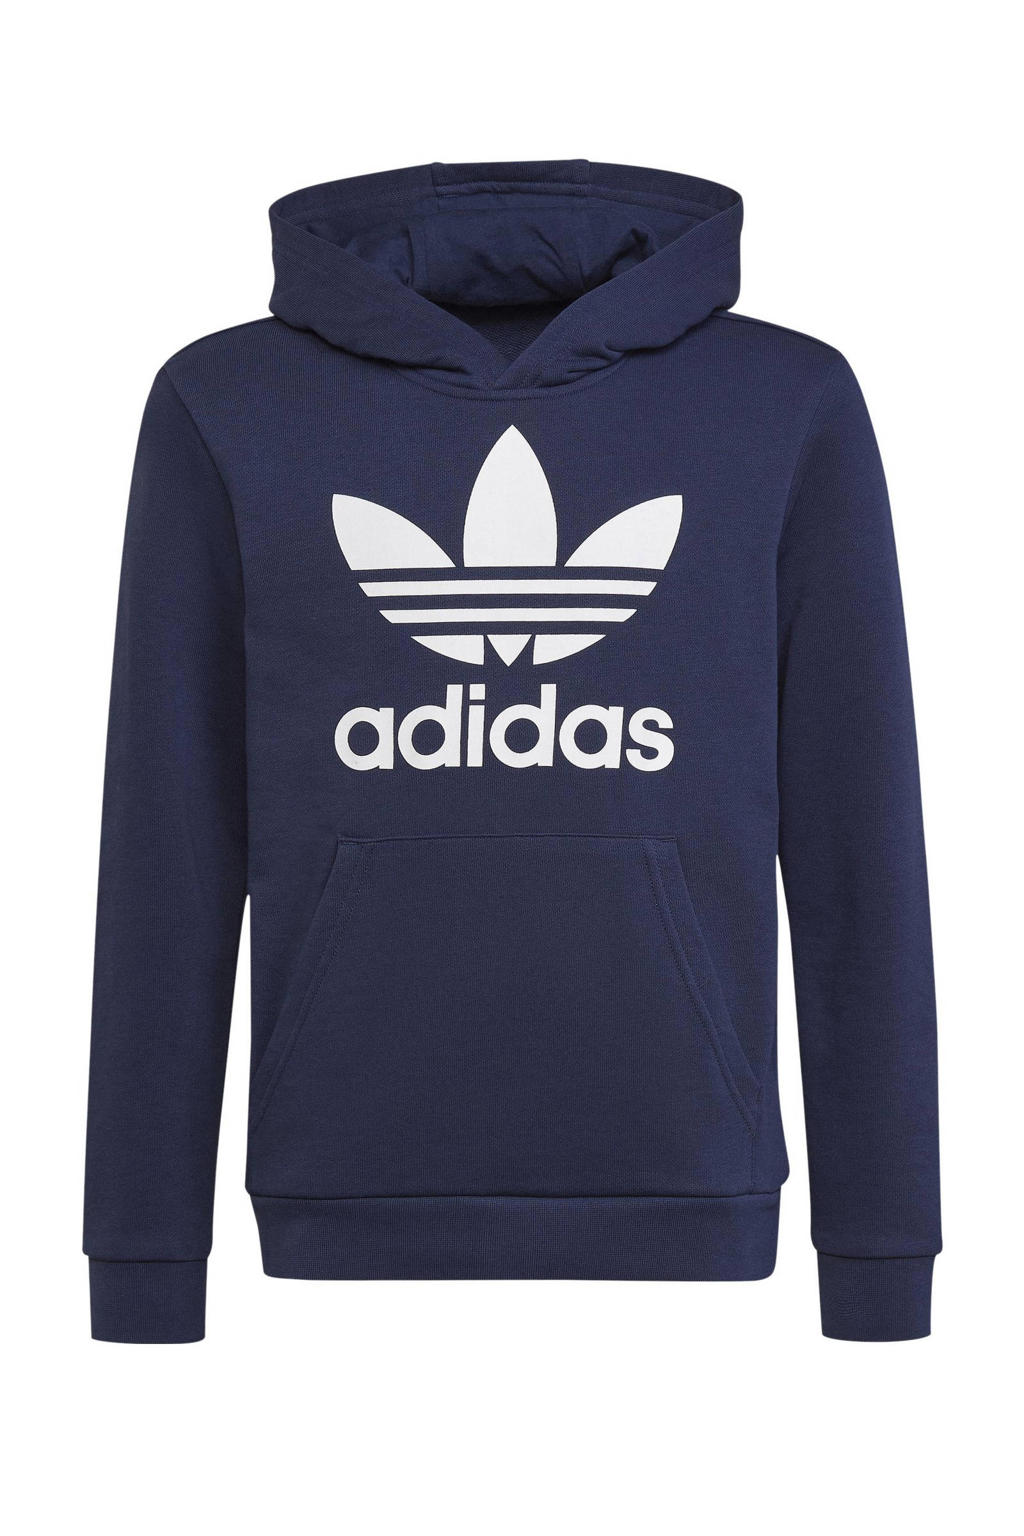 Donkerblauw en witte jongens en meisjes adidas Originals Adicolor hoodie van sweat materiaal met logo dessin, lange mouwen en capuchon